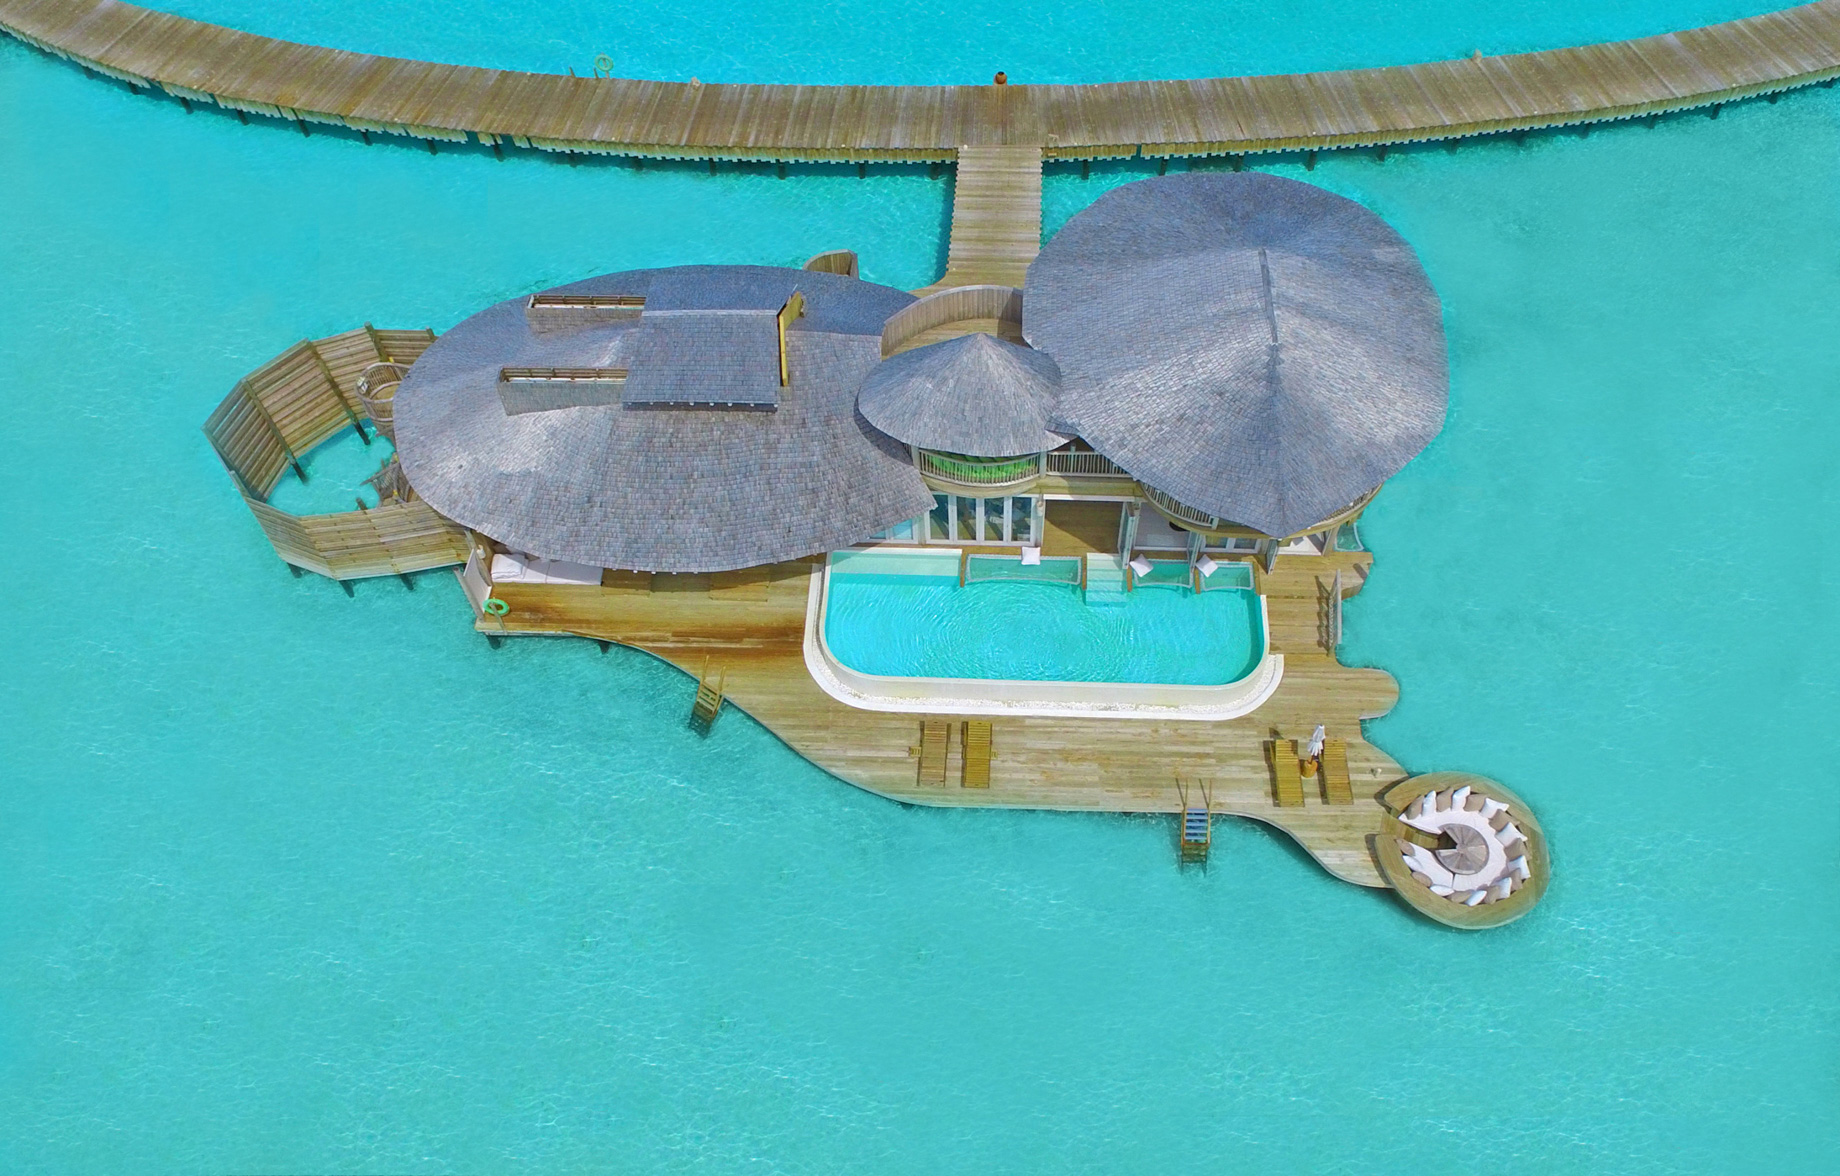 Soneva Jani Resort – Noonu Atoll, Medhufaru, Maldives – 2 Bedroom Water Retreat Villa Aerial